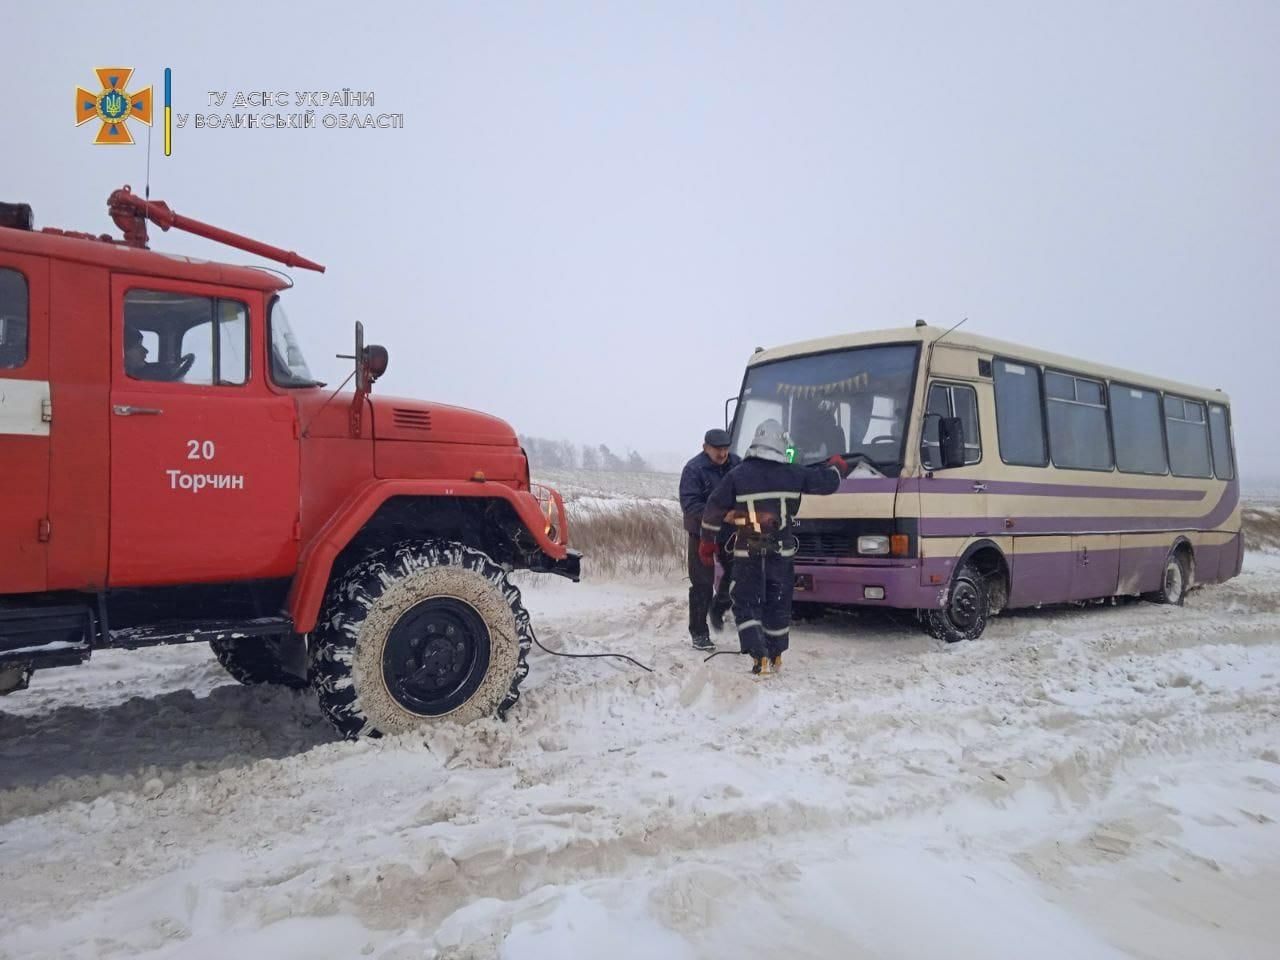 Ночью на Волыни в снегу застряли скорая и автобус: кадры спасения